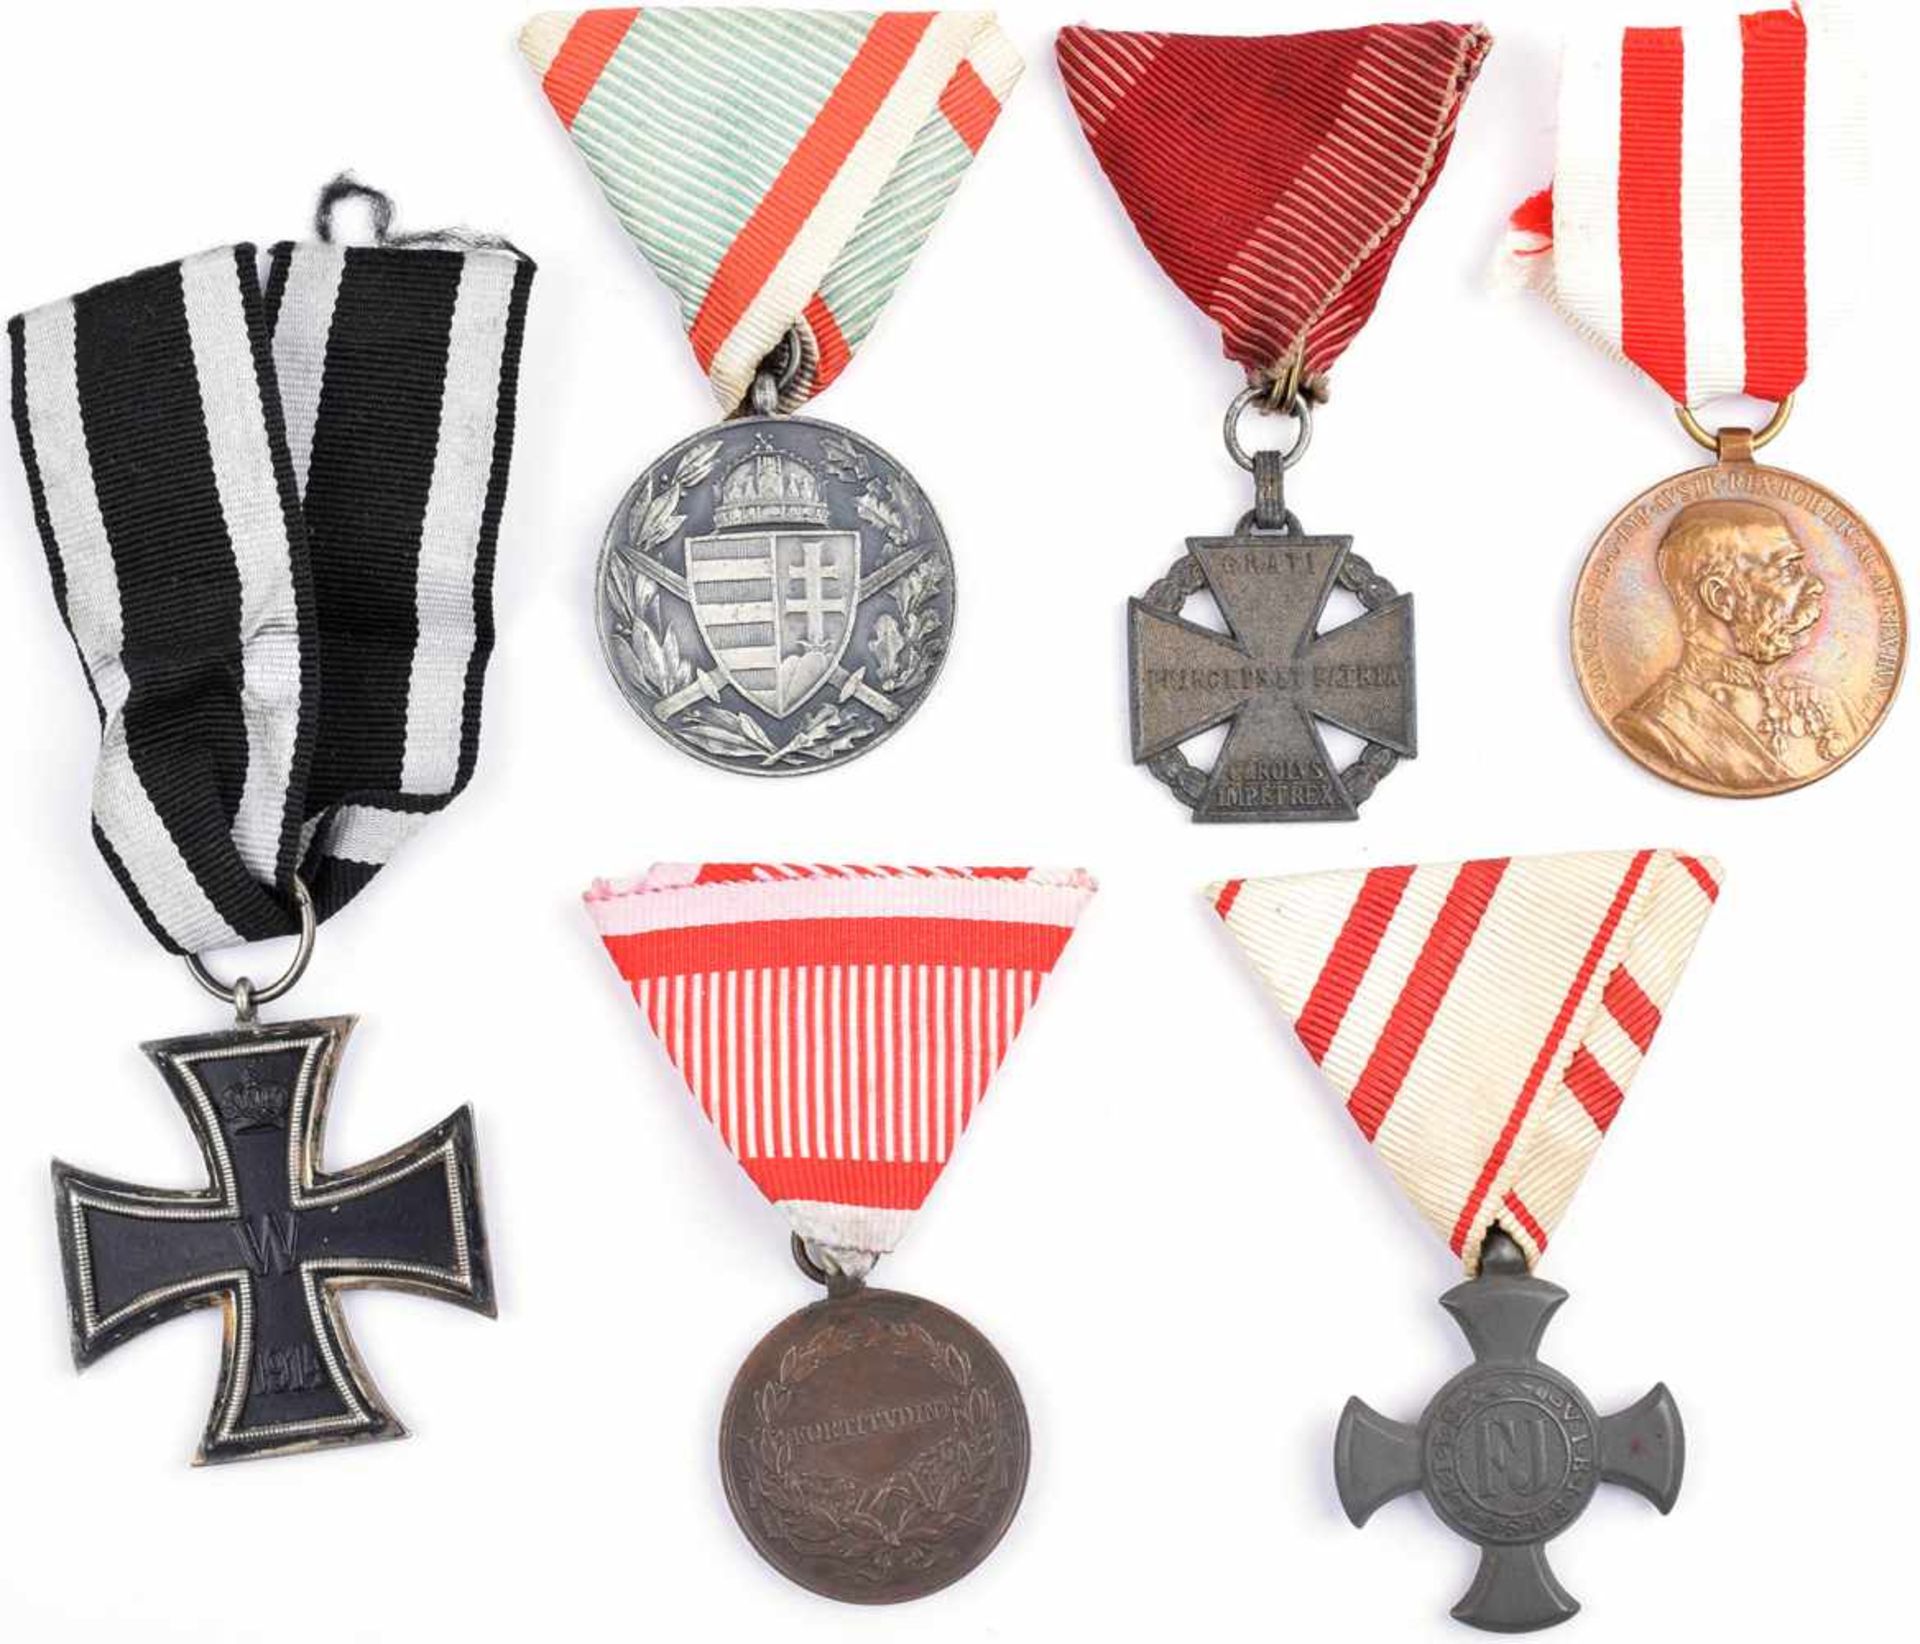 6 EHRENZEICHEN, Eisernes Verdienstkreuz 1916; Bronzene Tapferkeitsmedaille Kaiser Karl; Karl-